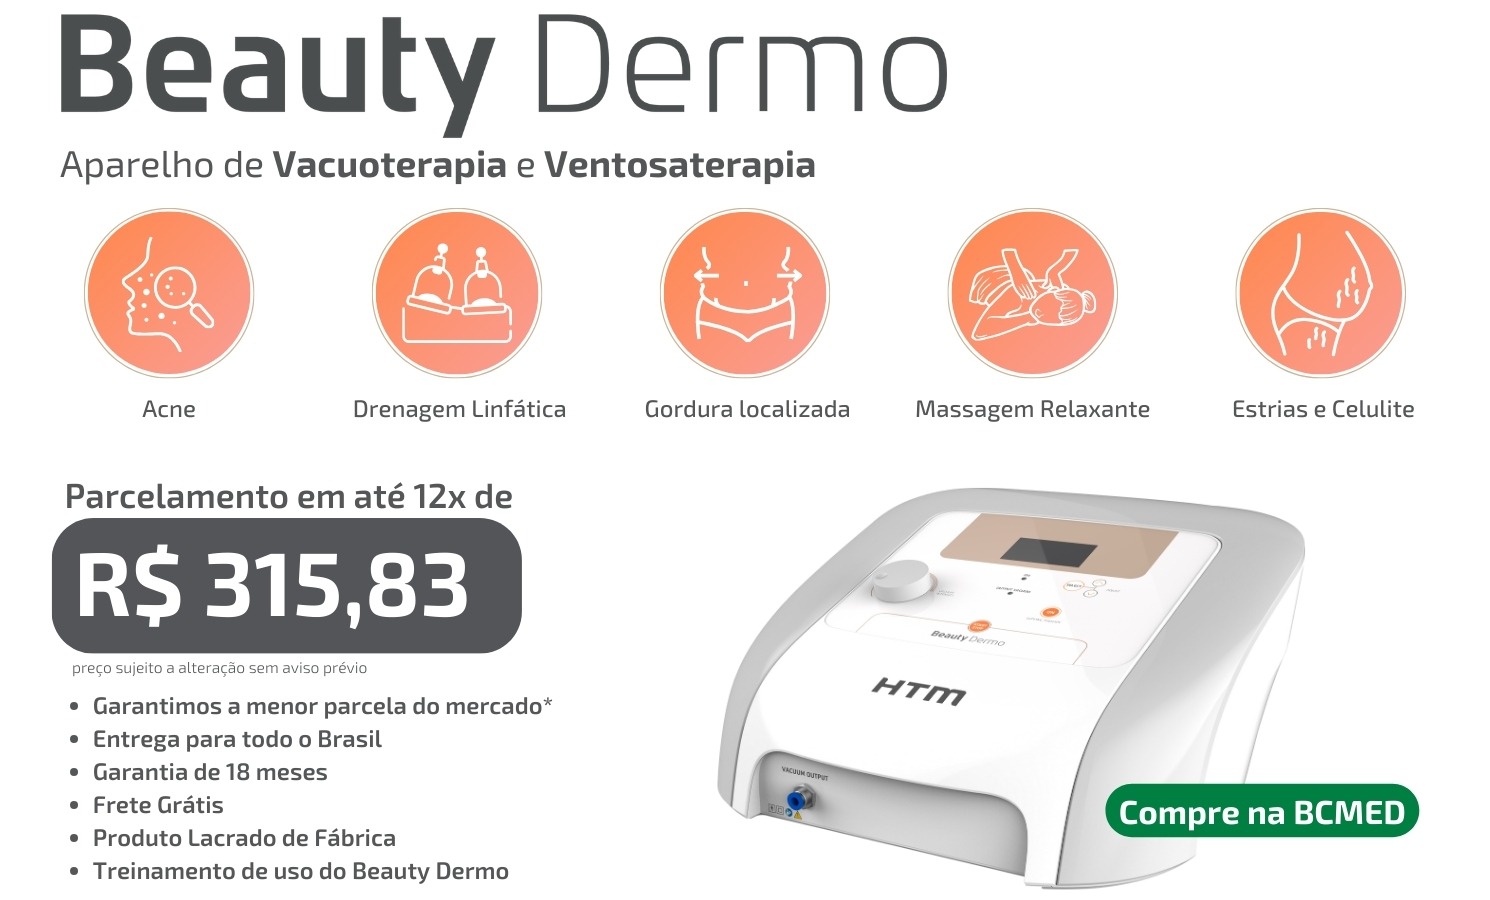 apresentação - Beauty Dermo HTM - Aparelho de Vacuoterapia e Ventosaterapia